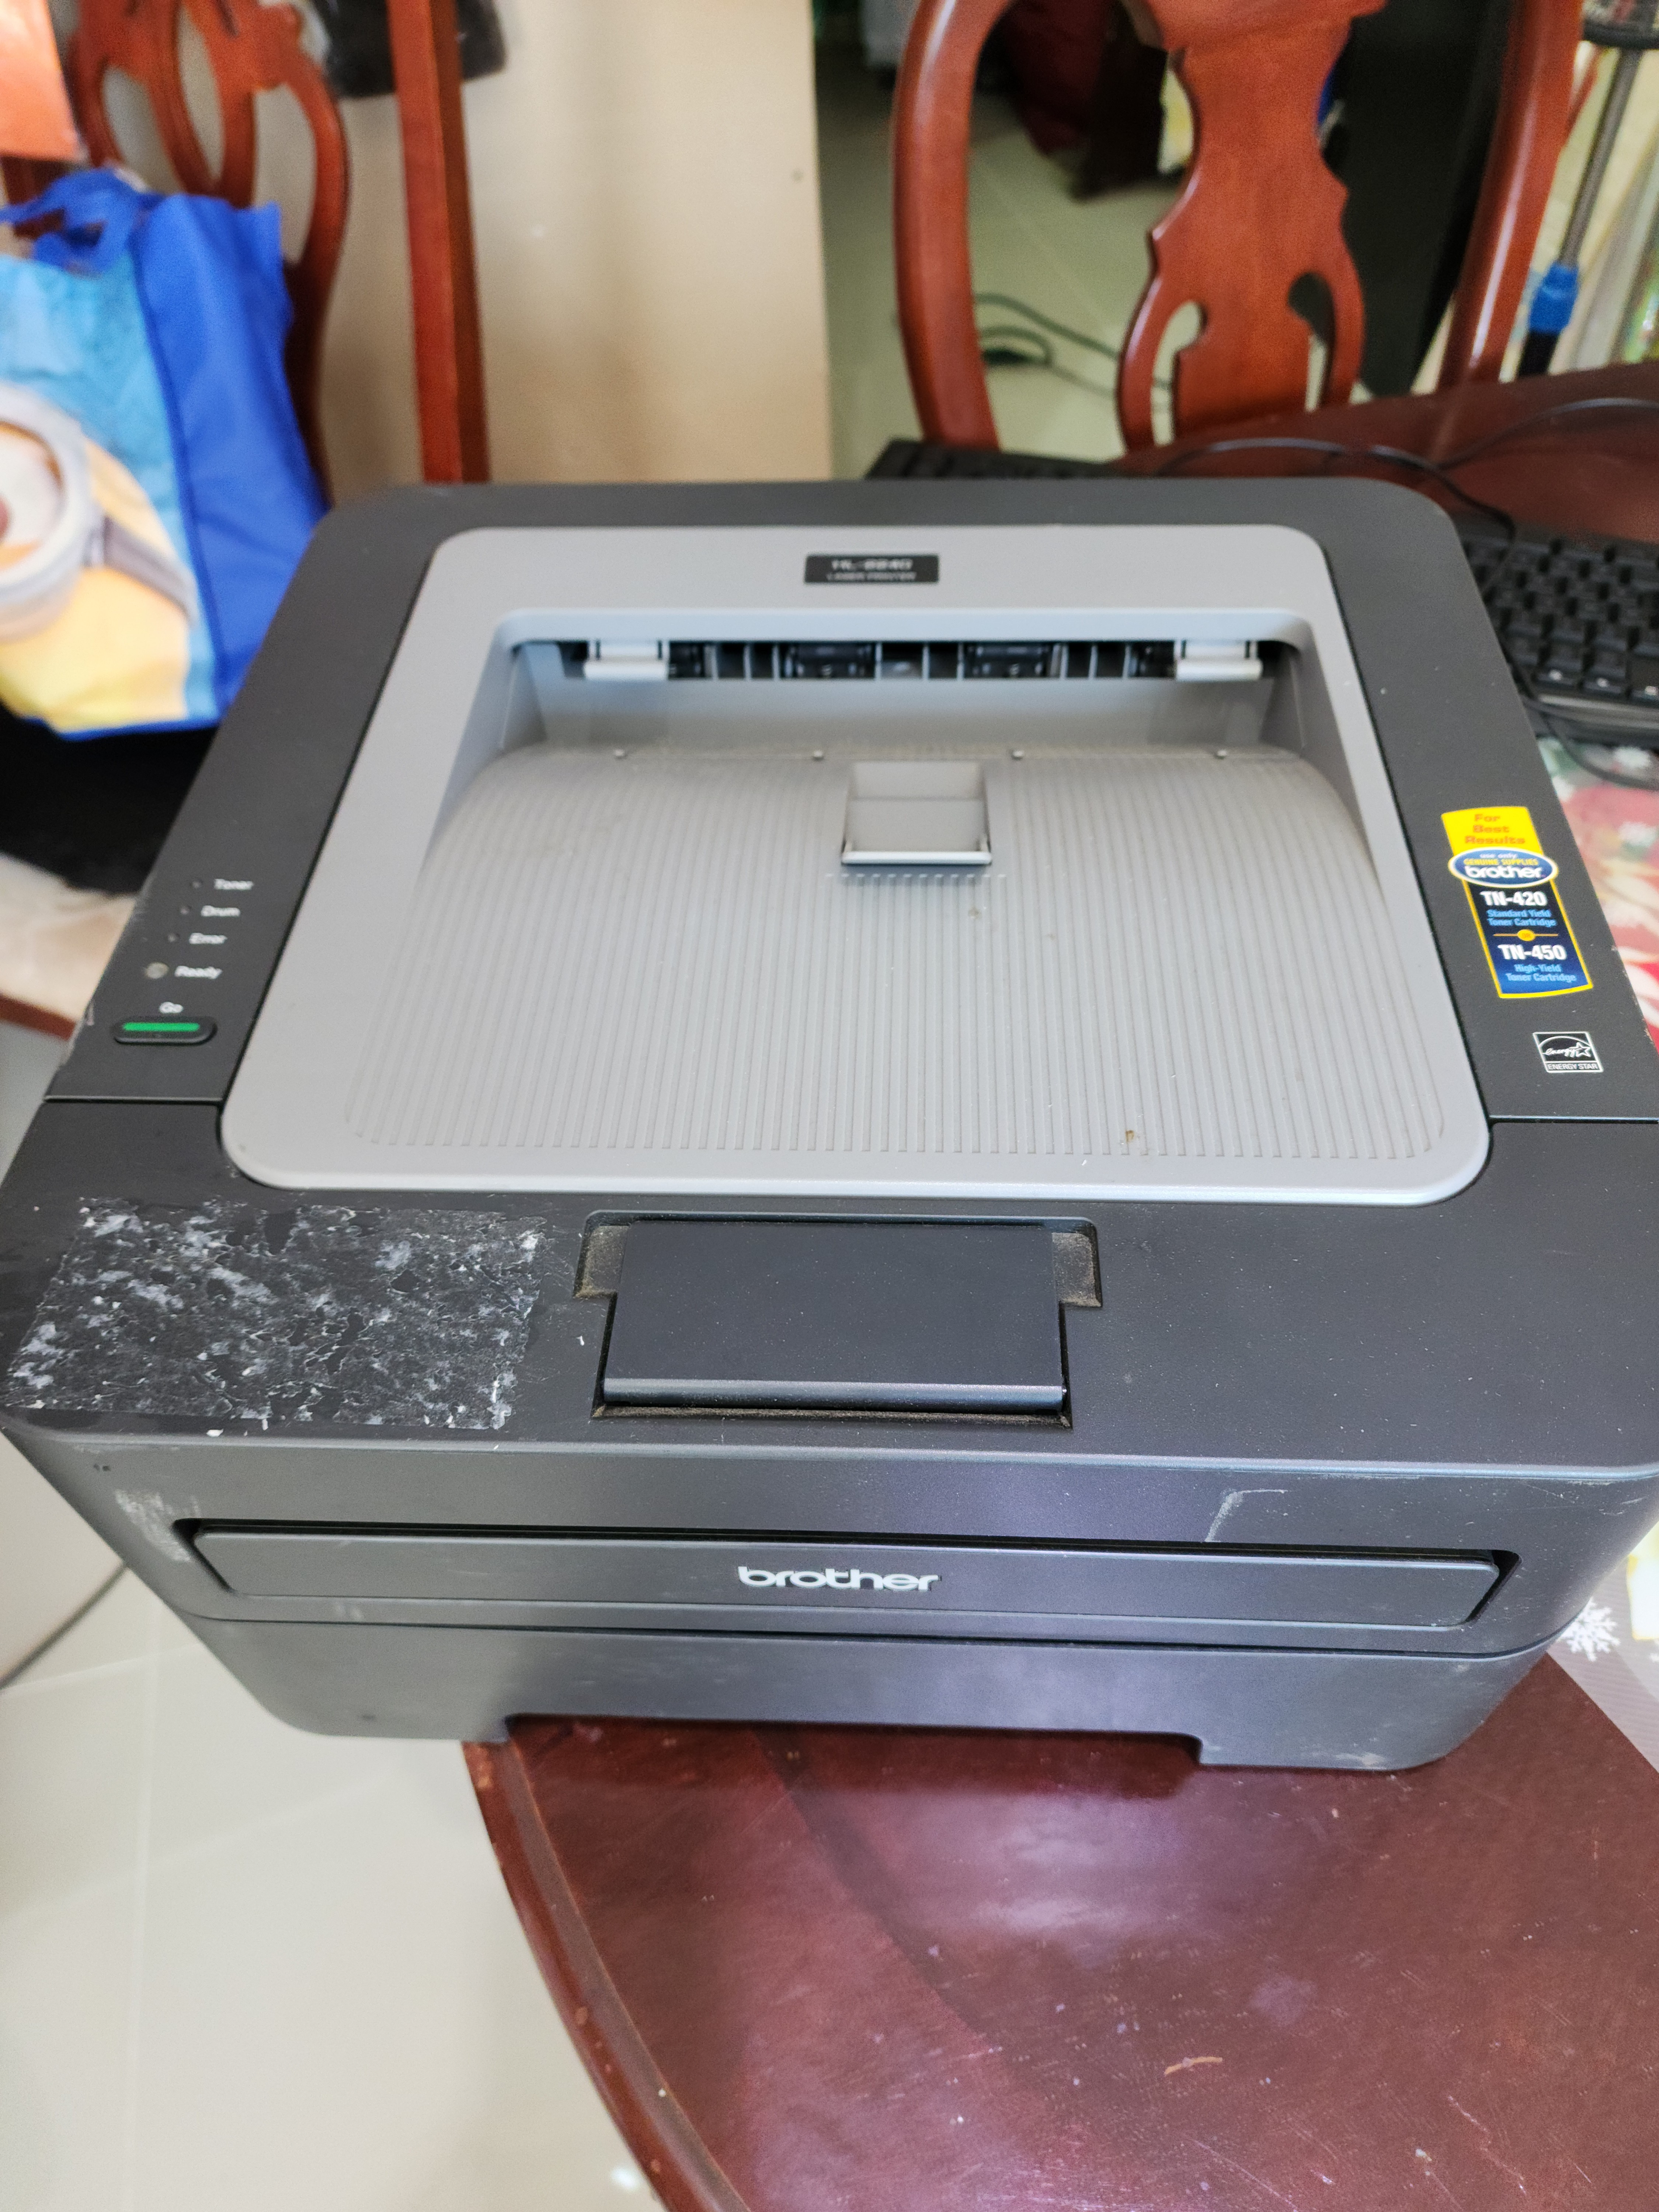 impresoras y scanners - Printer laser Imprimidora  nueva en 3,300